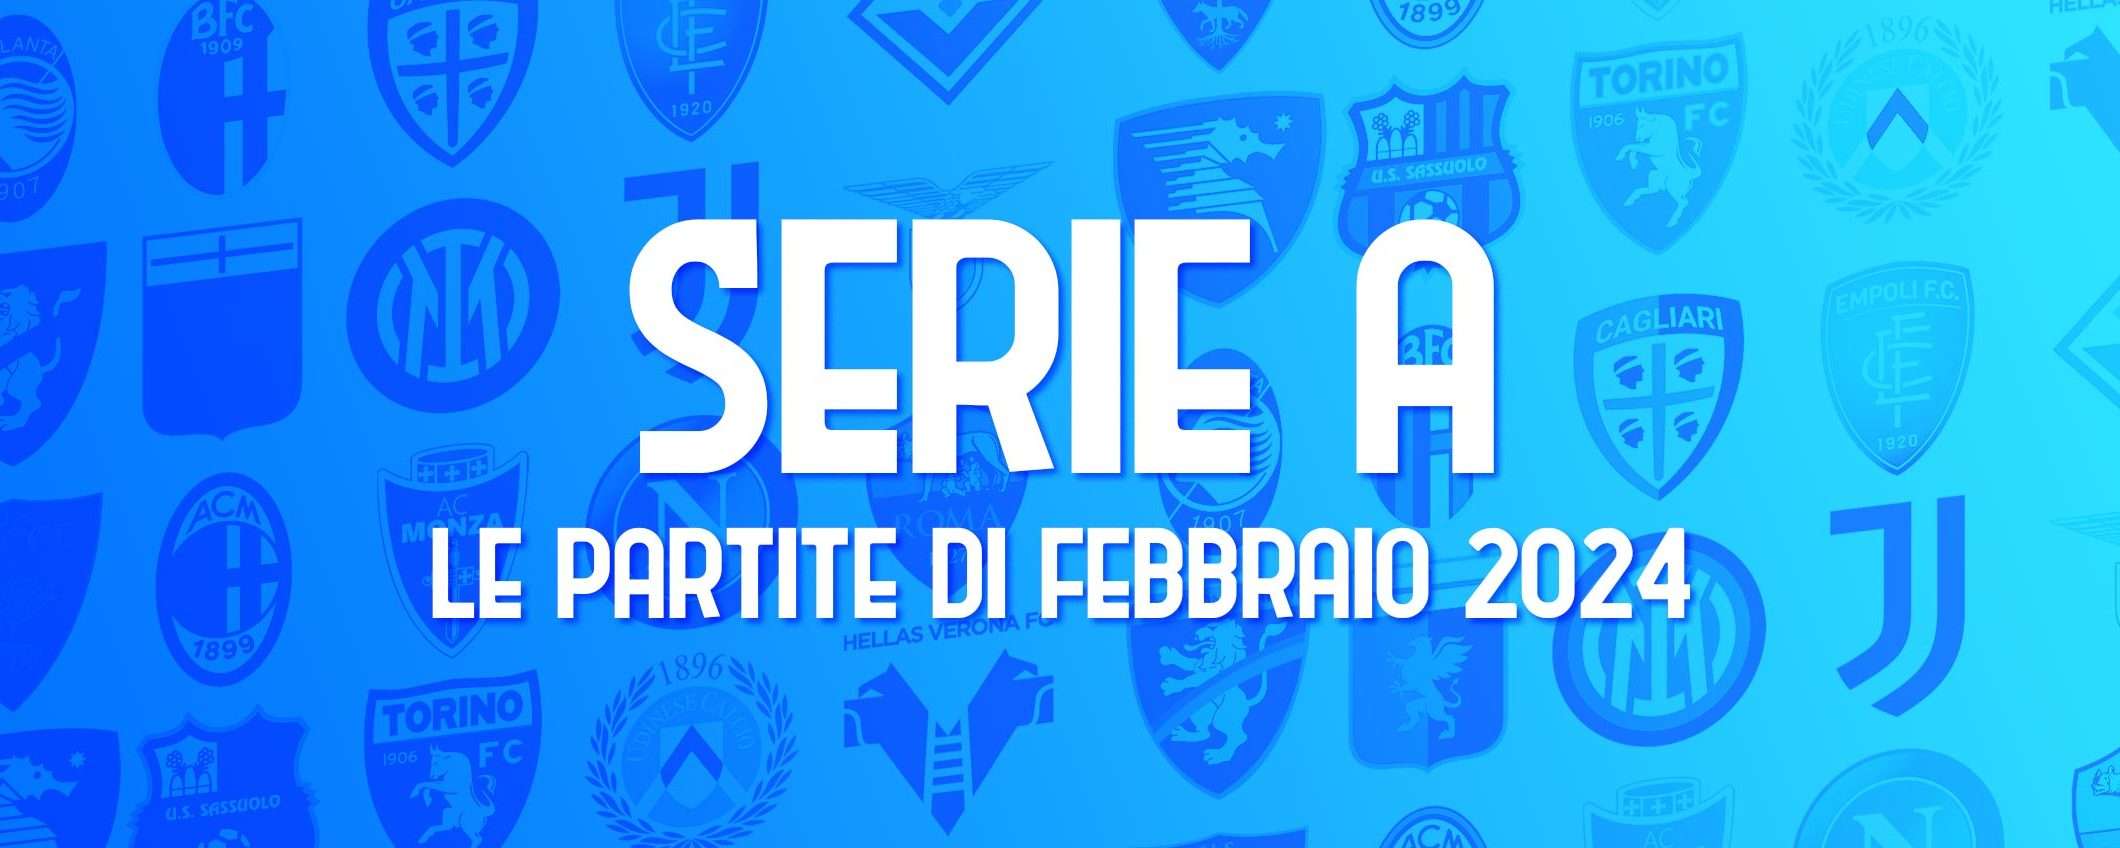 Serie A: calendario completo delle partite di febbraio 2024